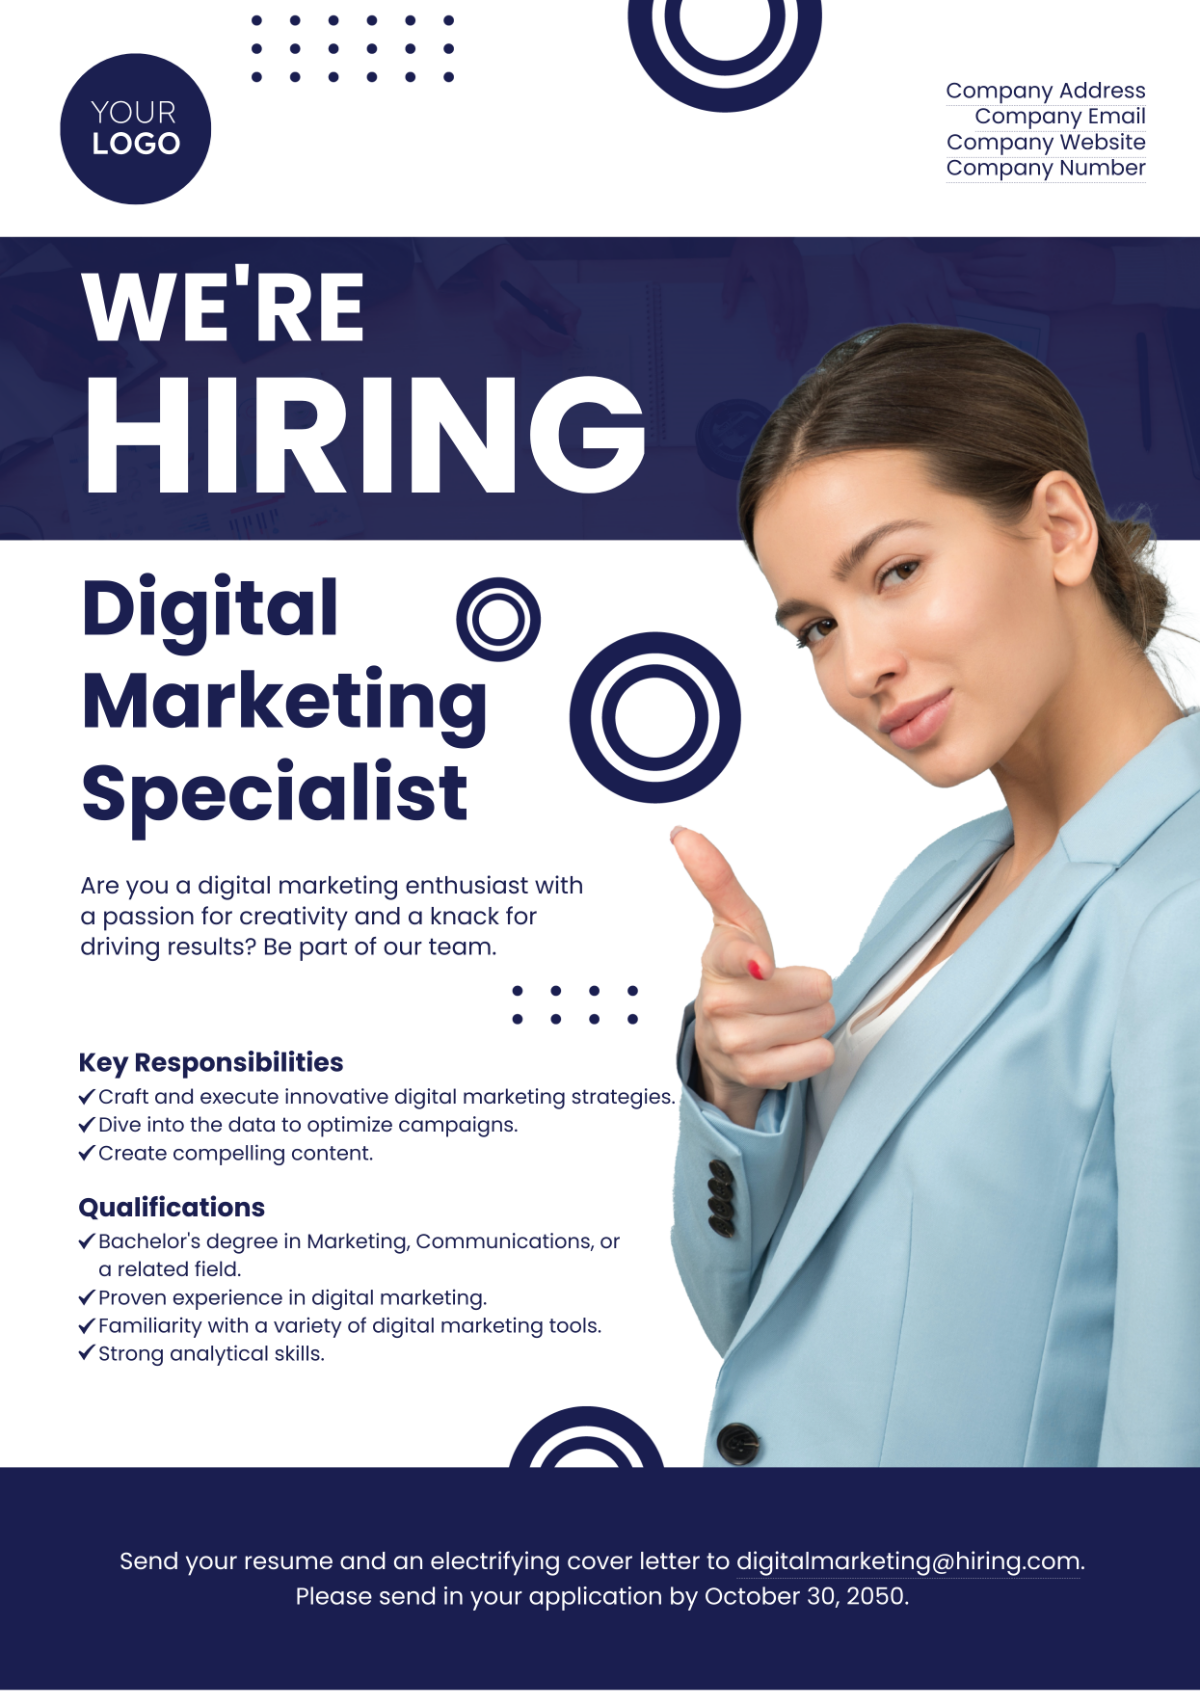 Digital Marketing Specialist Job Ad Template